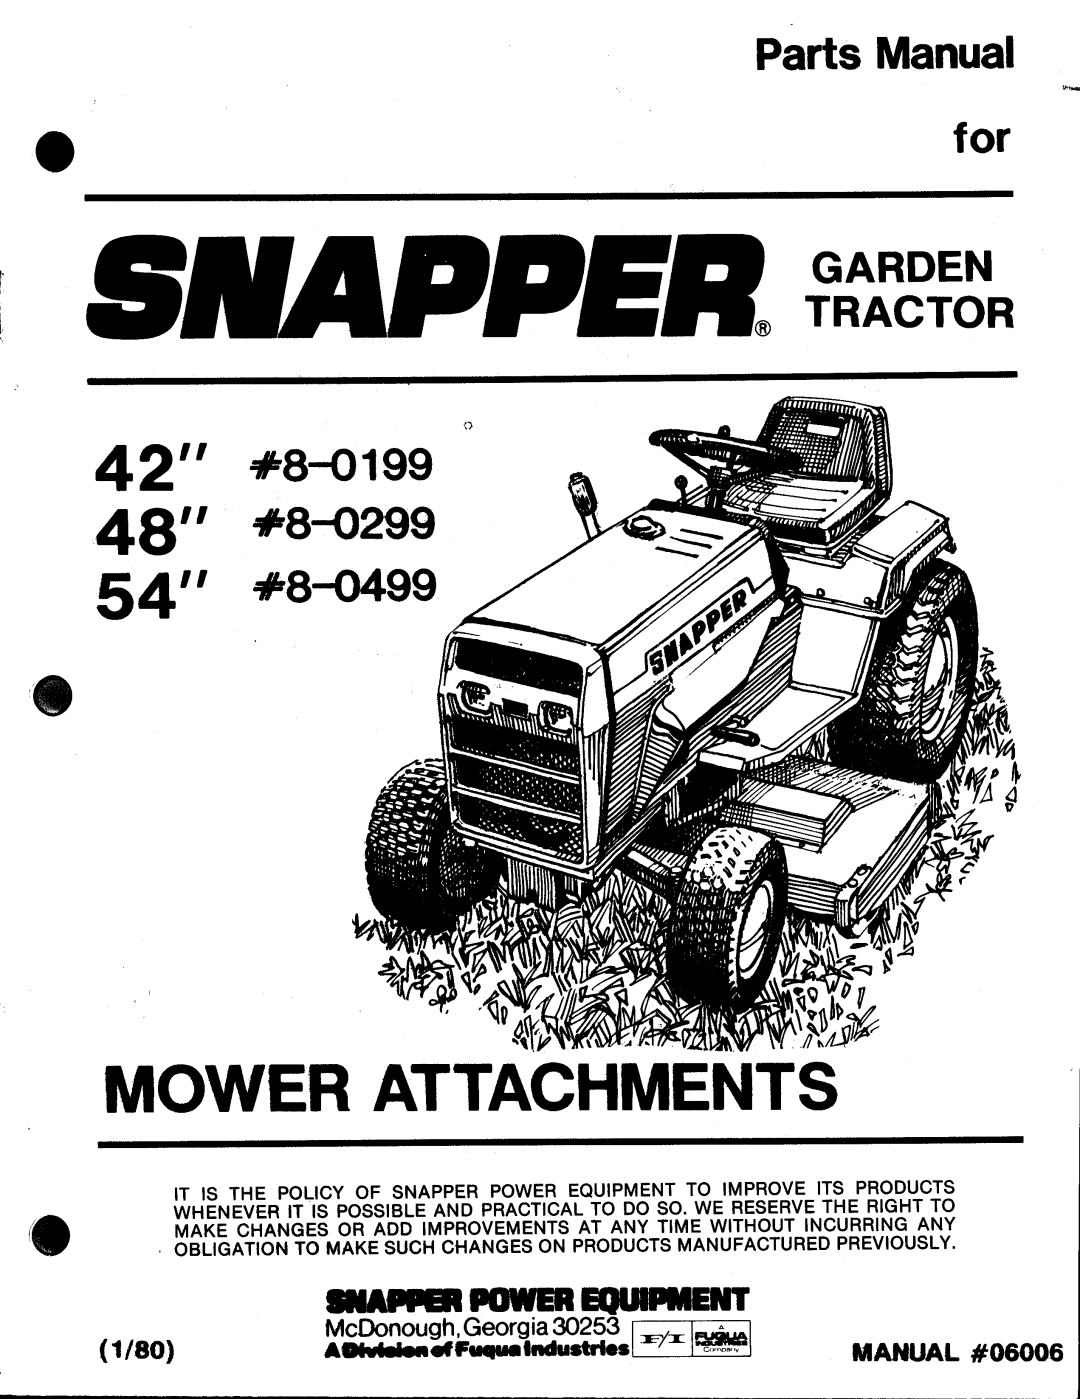 Snapper 8-0499, 8-0199, 8-0299, 06006 manual 